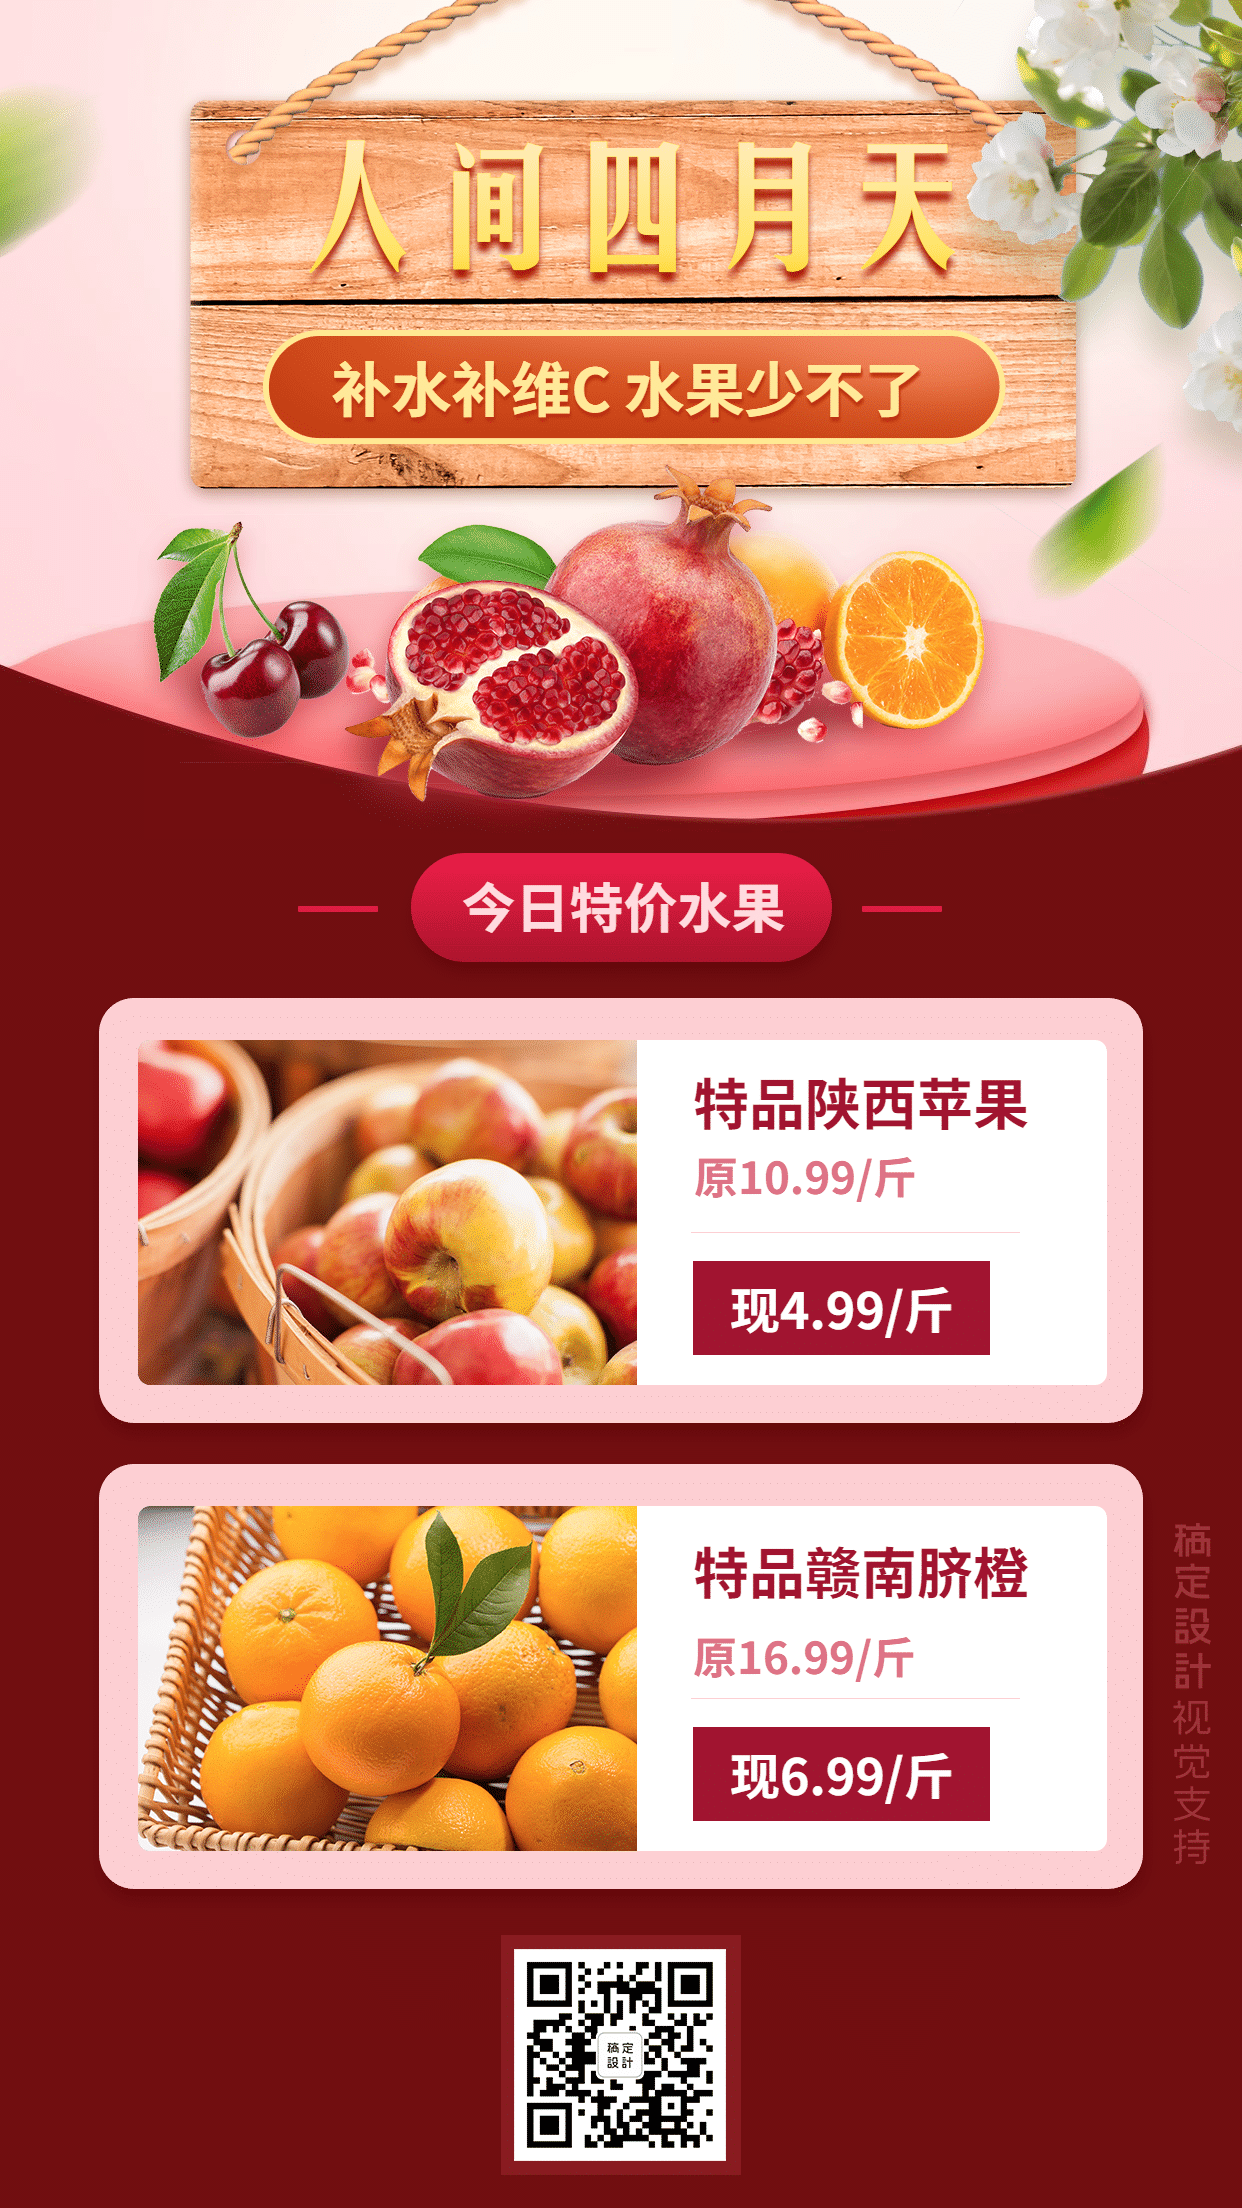 四月天水果生鲜价目表展示营销手机海报